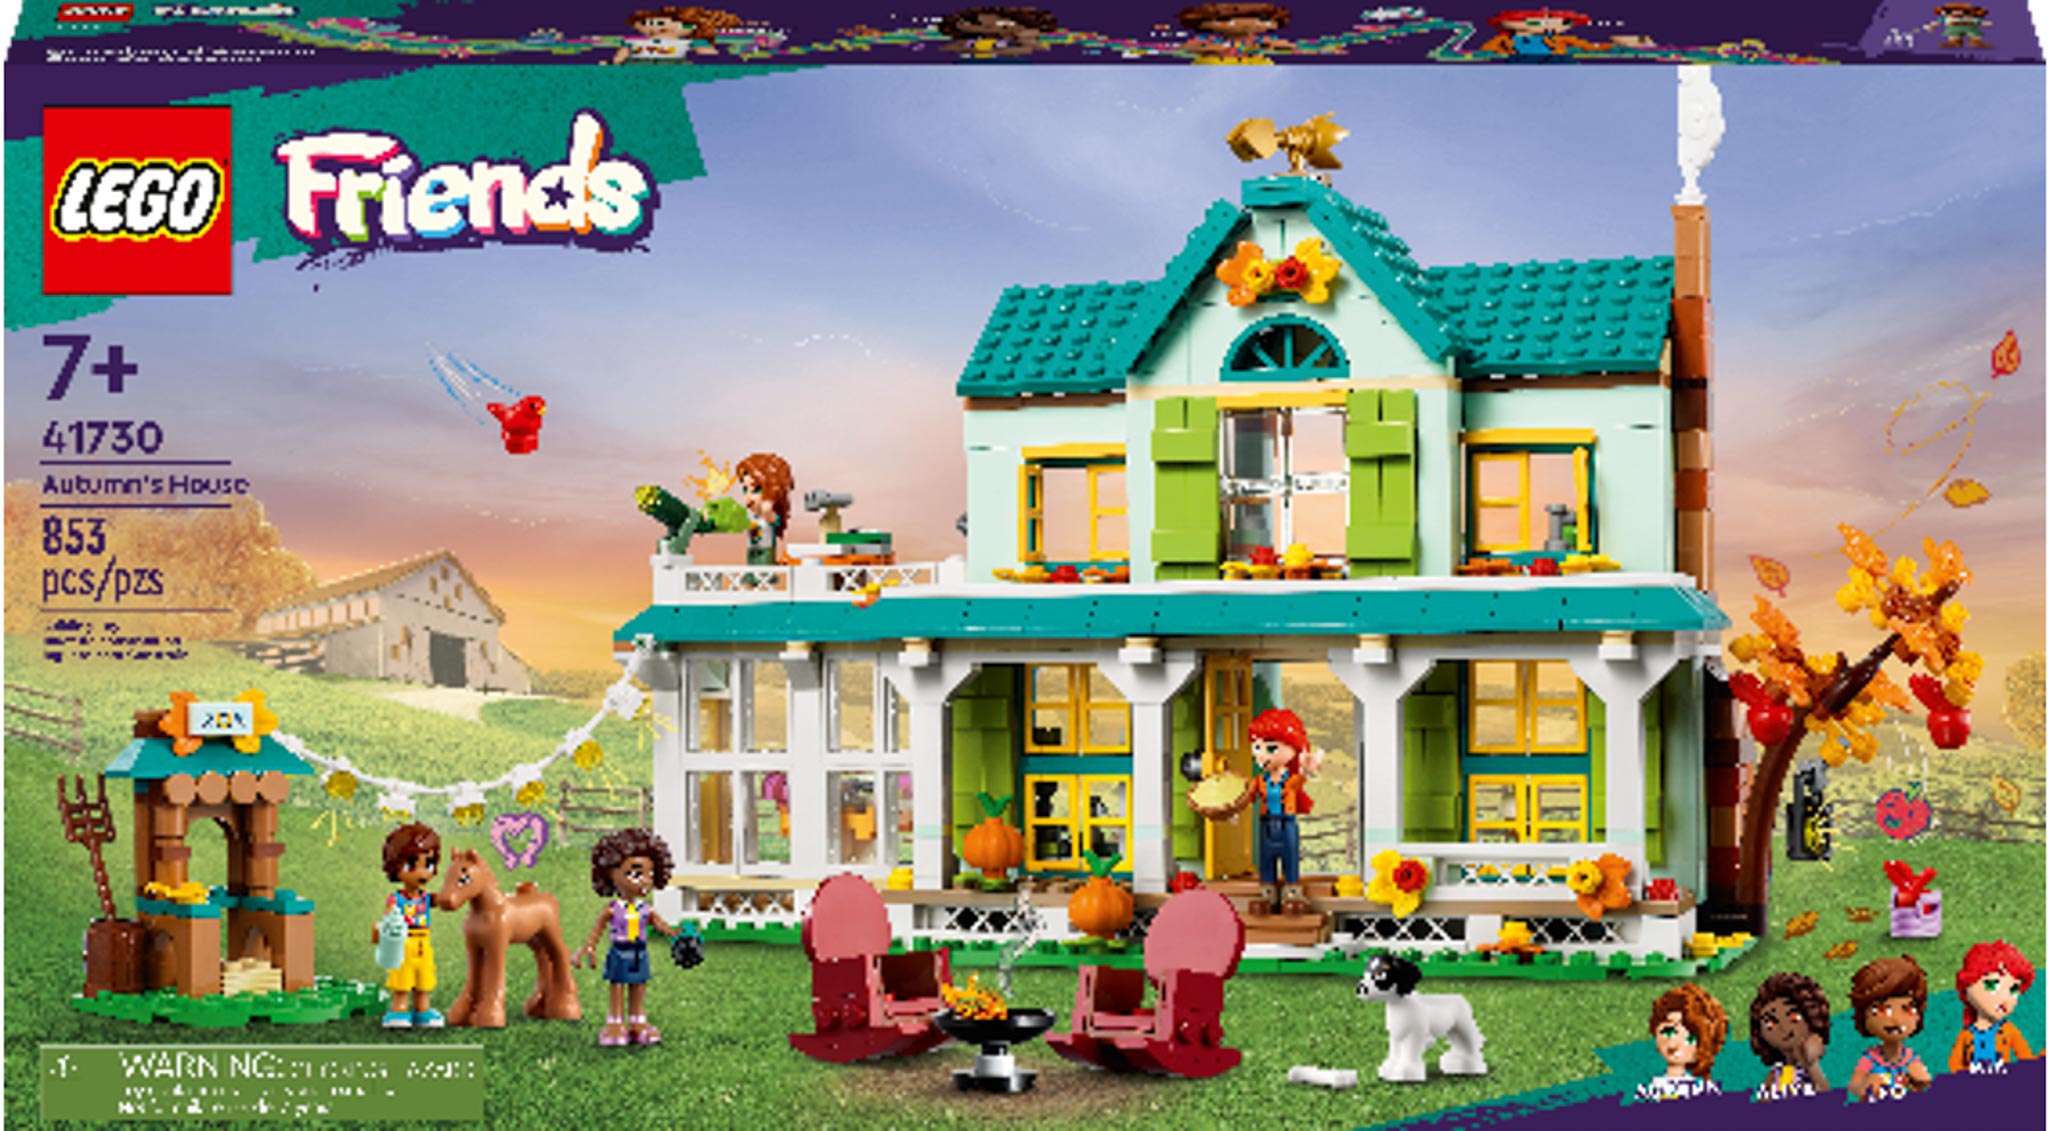 LEGO Group ra mắt dòng sản phẩm LEGO® Friends mới